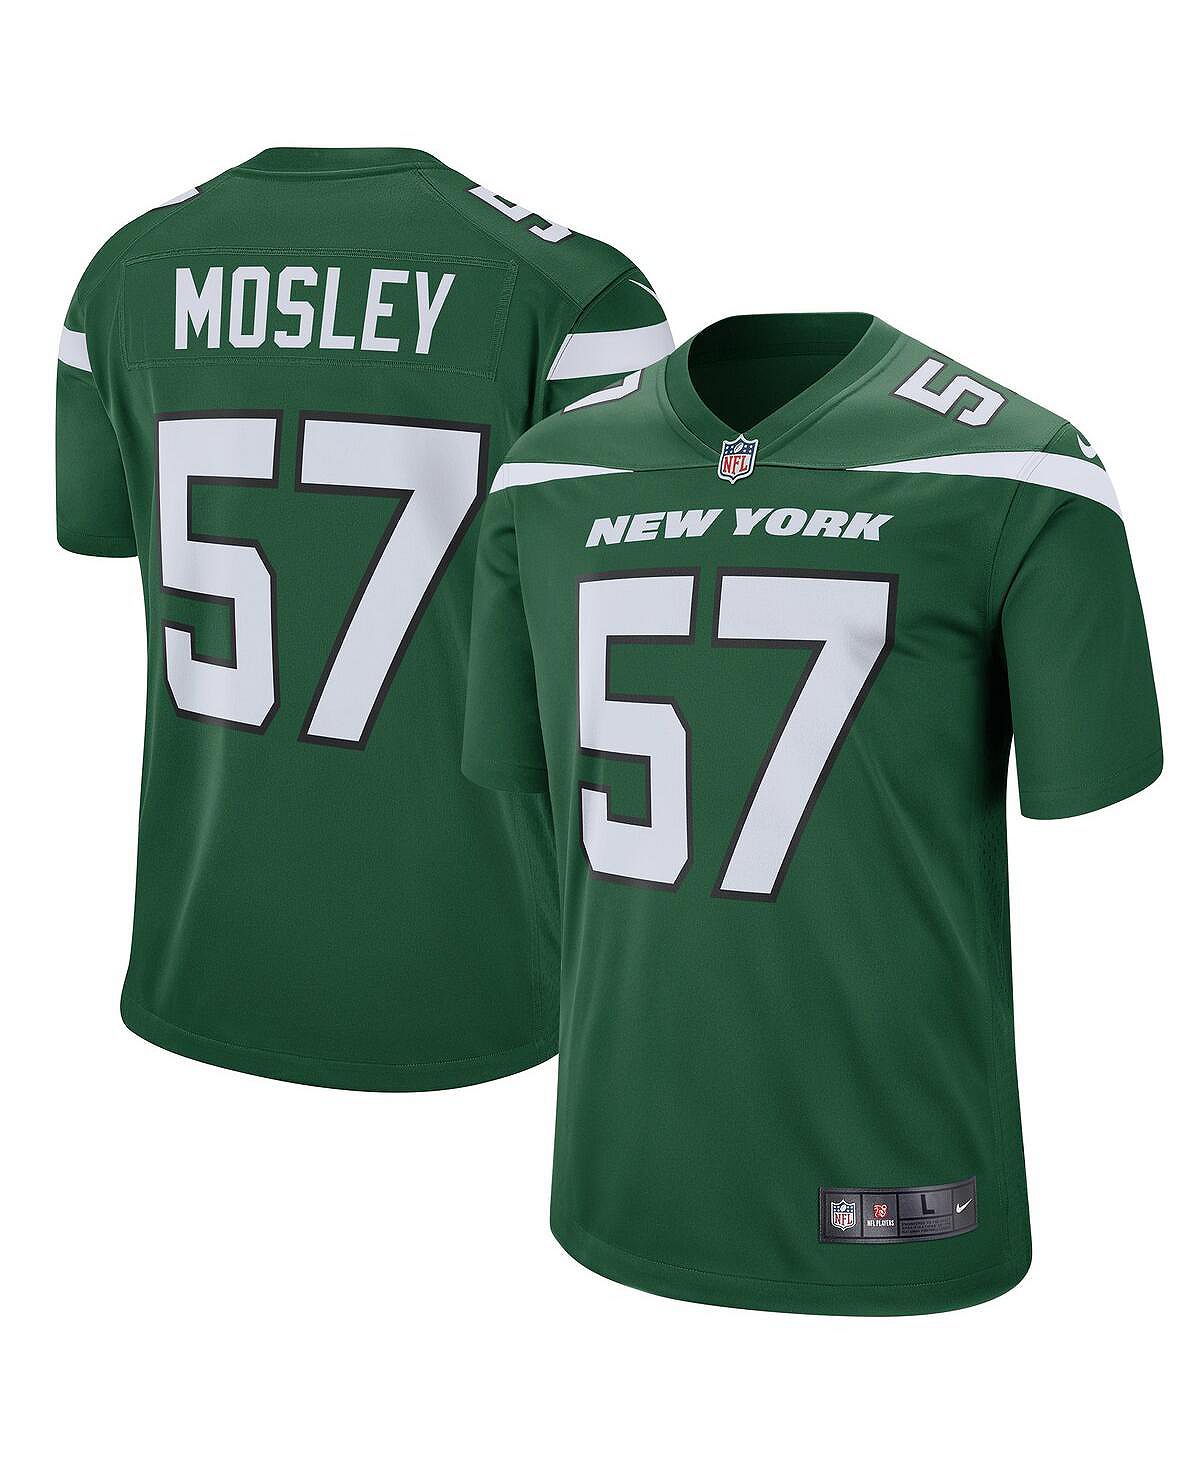 Мужская футболка cj mosley gotham green new york jets game jersey Nike, зеленый